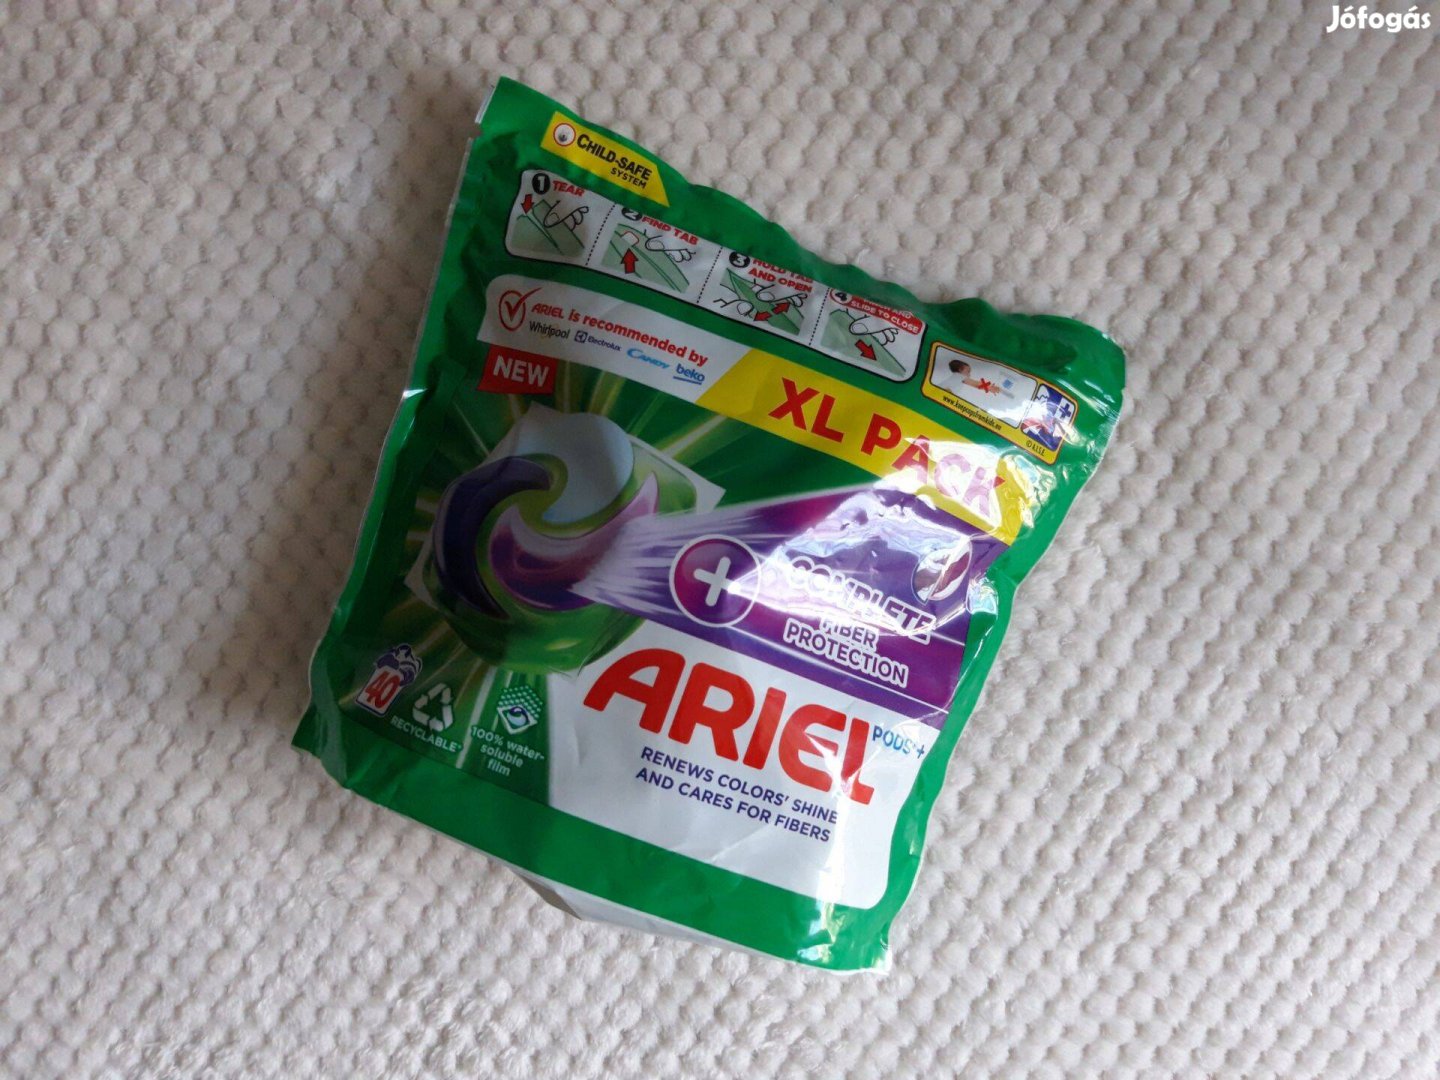 Ariel XL Pack mosógép gél kapszula, 40 mosáshoz